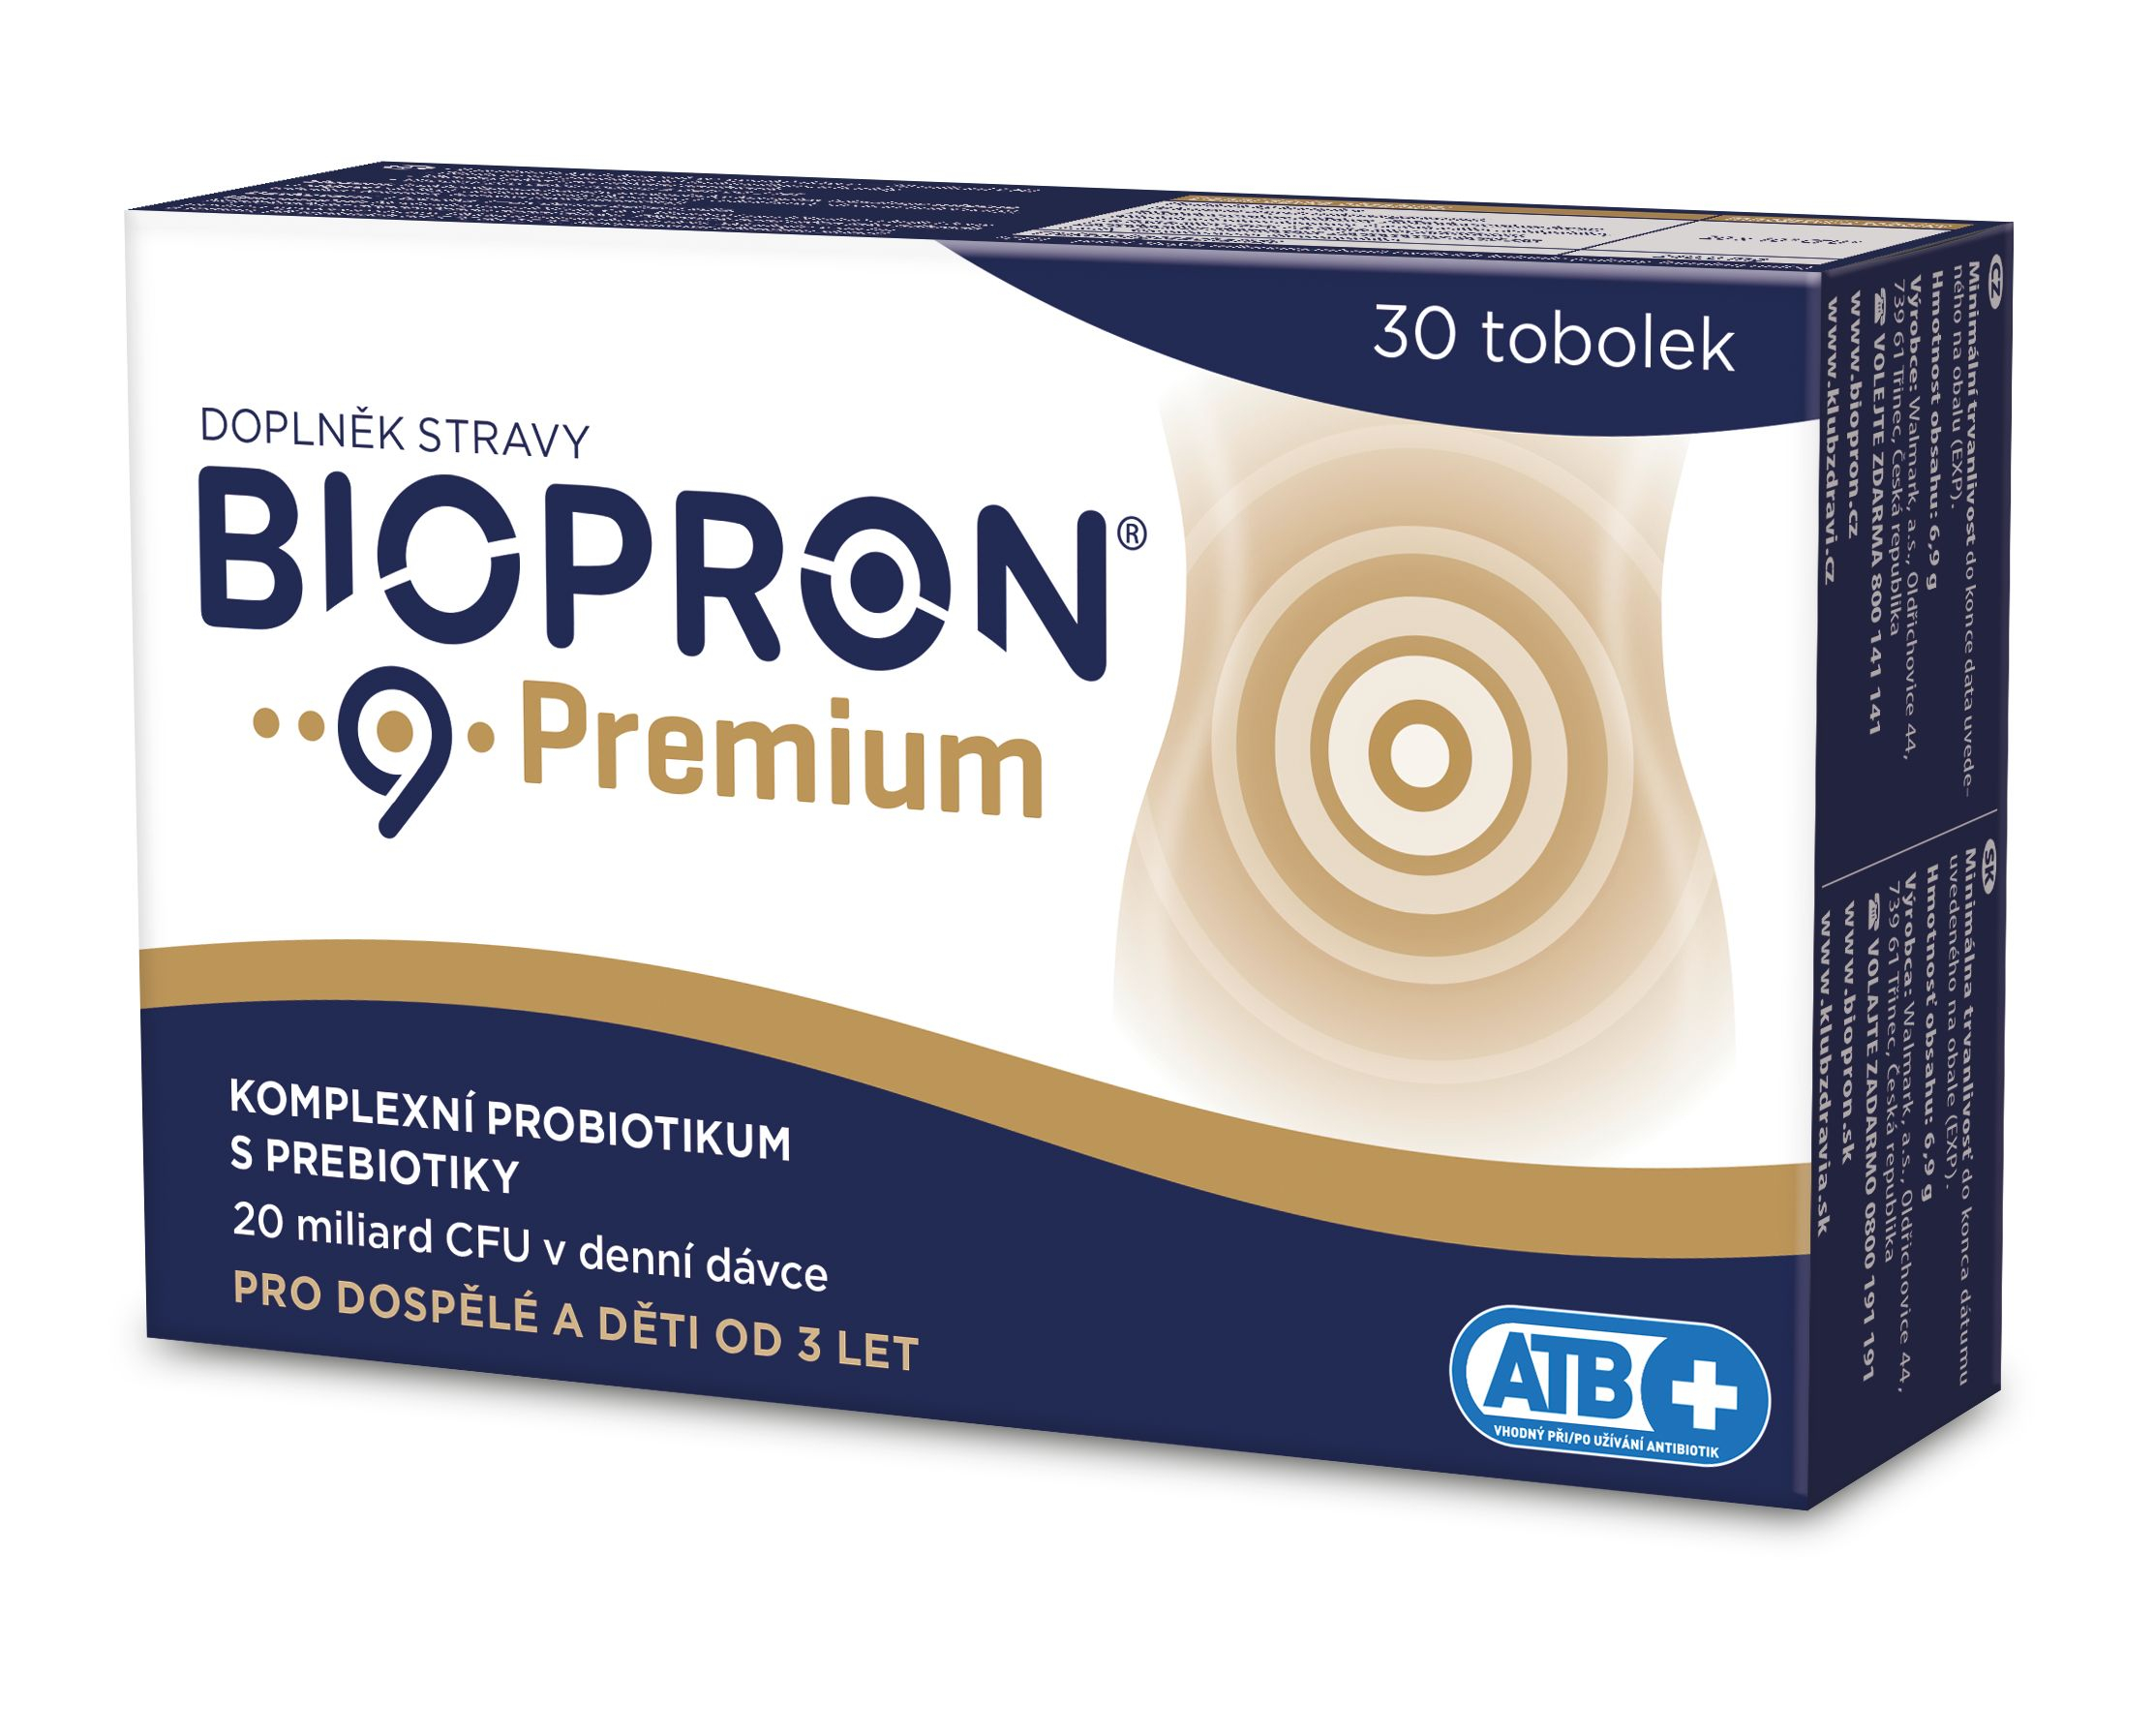 Biopron 9 Premium 30 tobolek Biopron